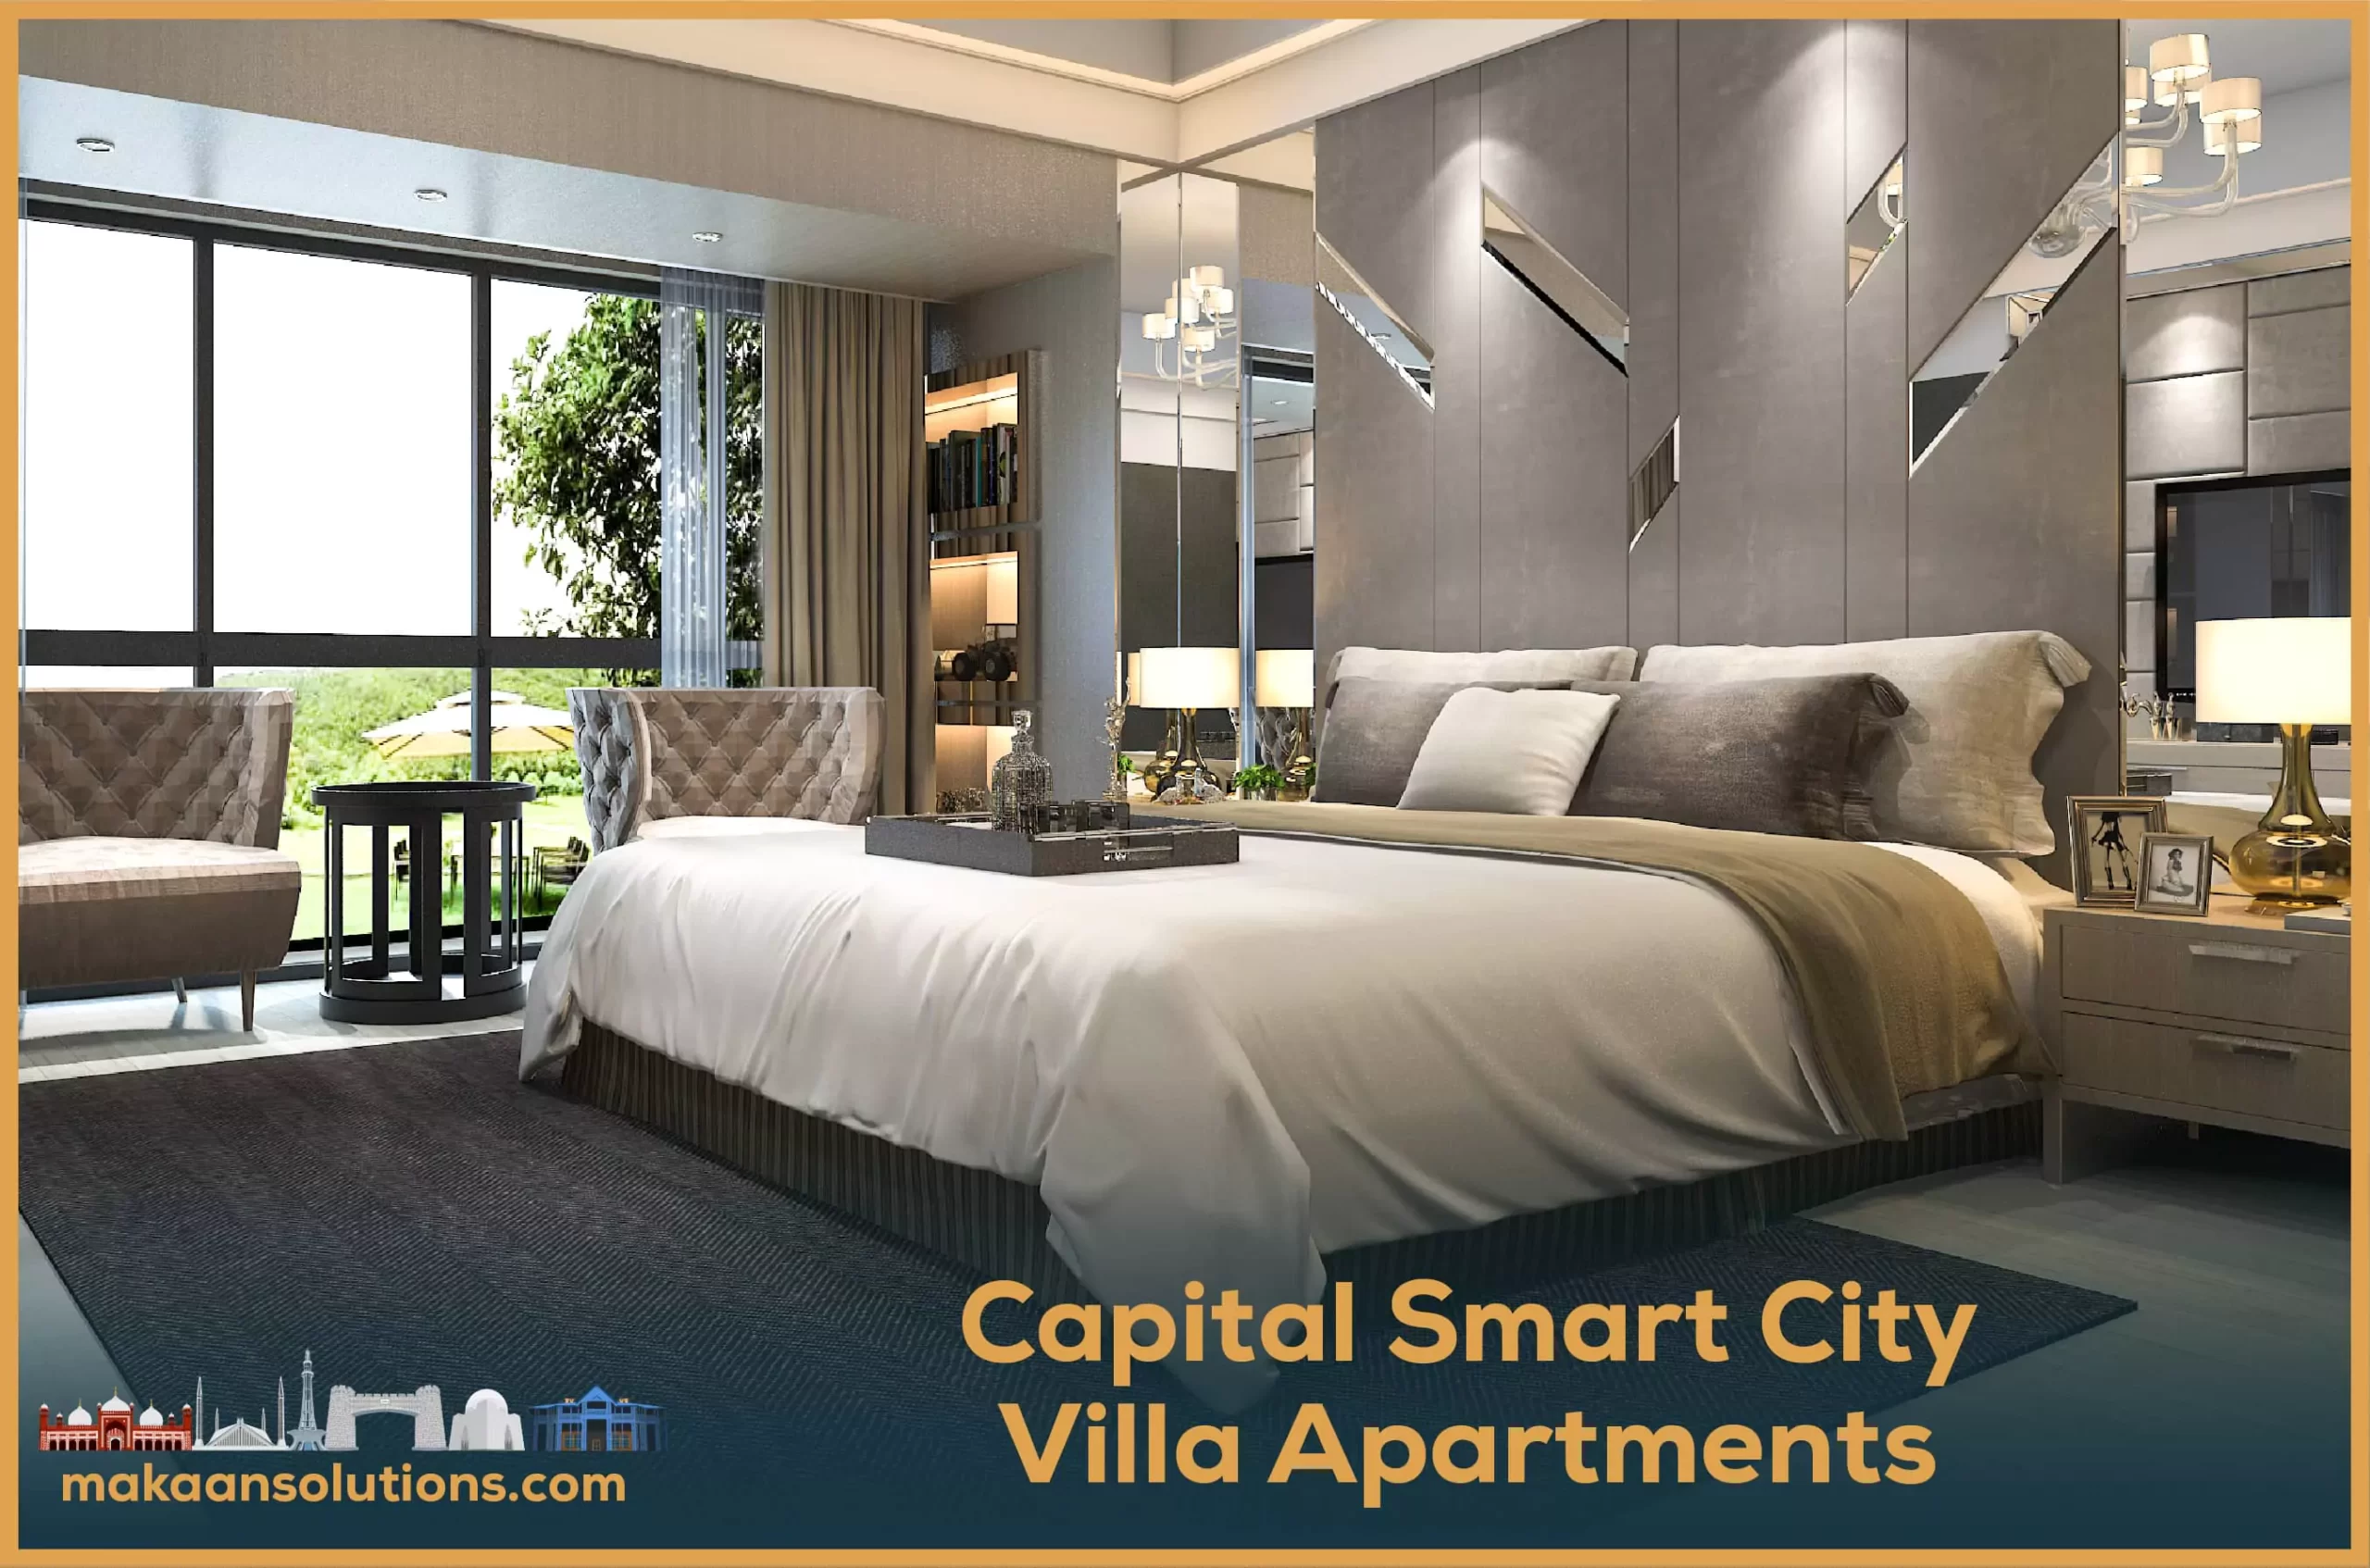 Capital Smart City Villa Apartments